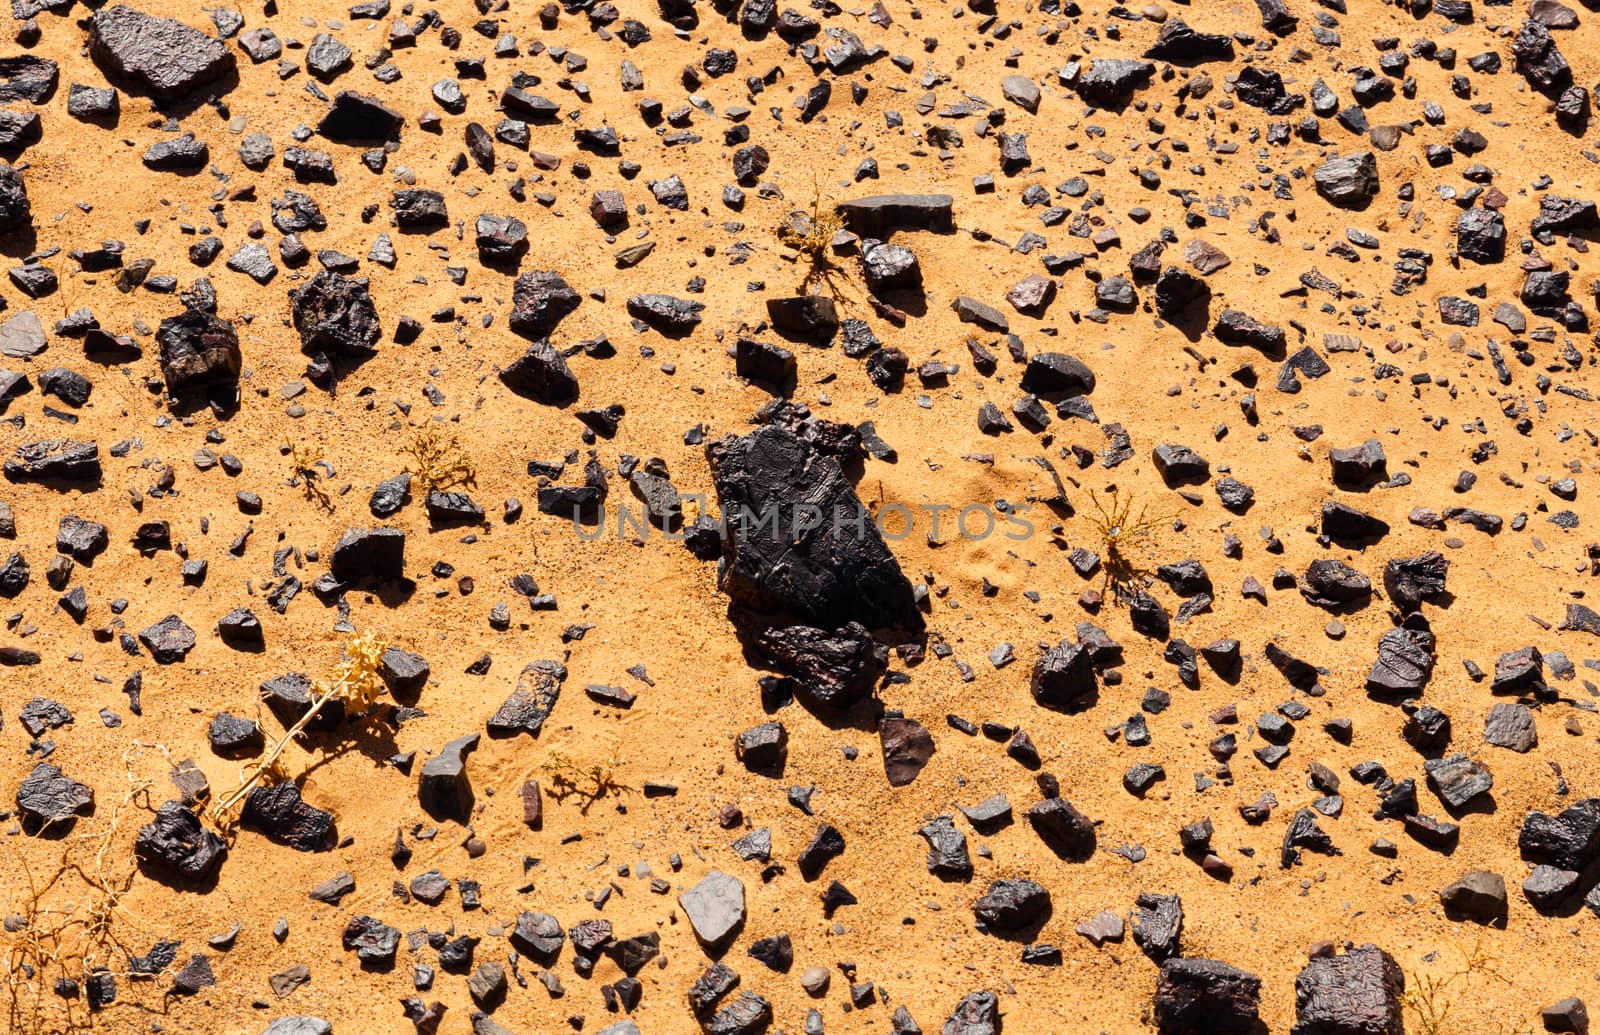 black rocks in the sun in the Sahara desert, Morocco